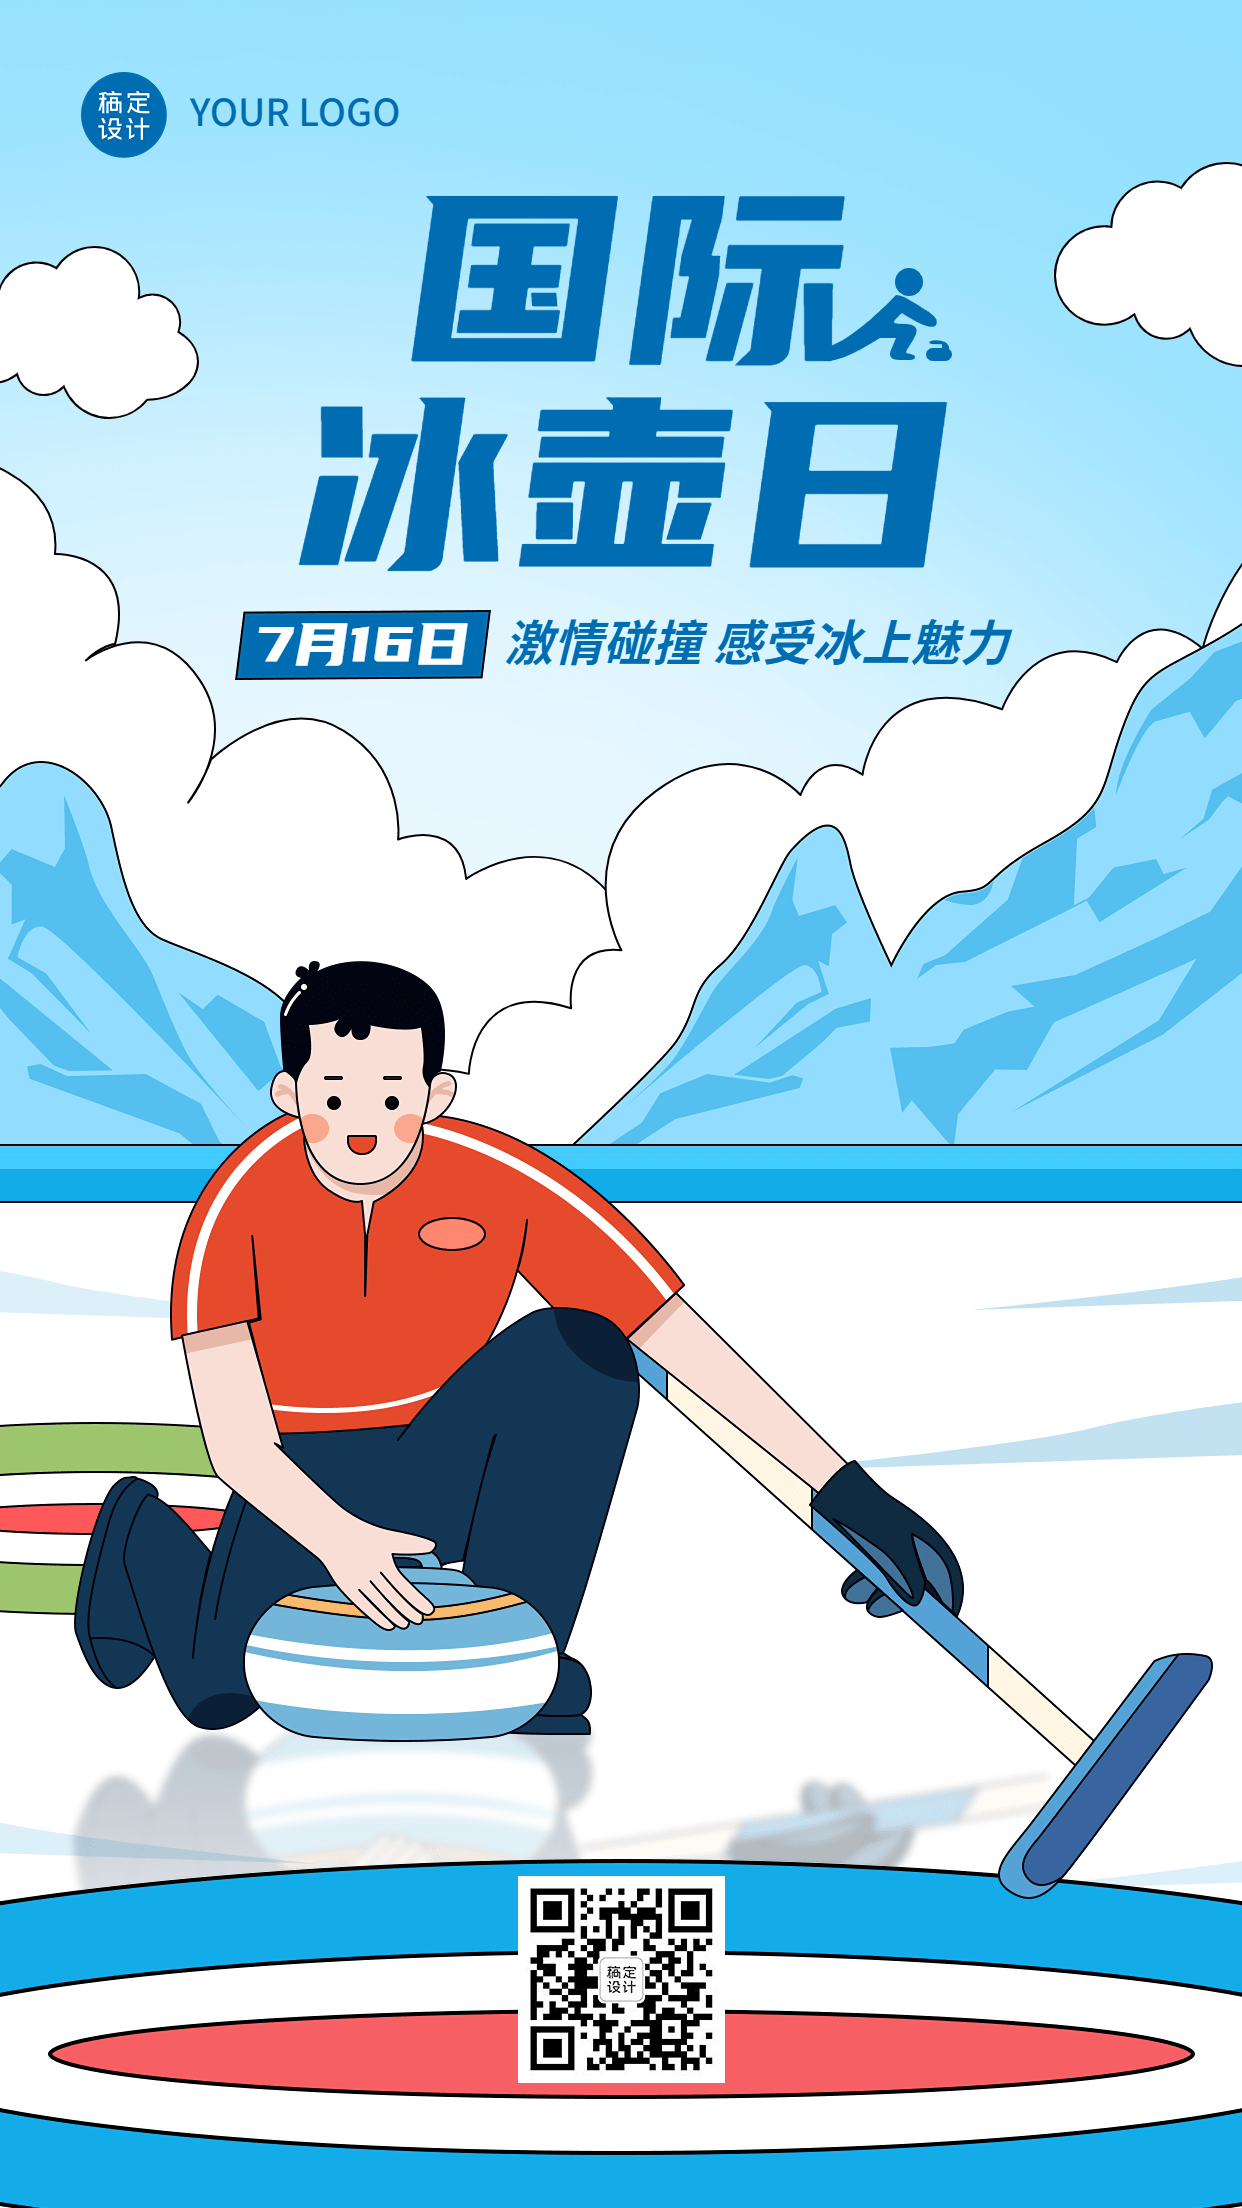 国际冰壶日节日宣传手绘插画手机海报预览效果